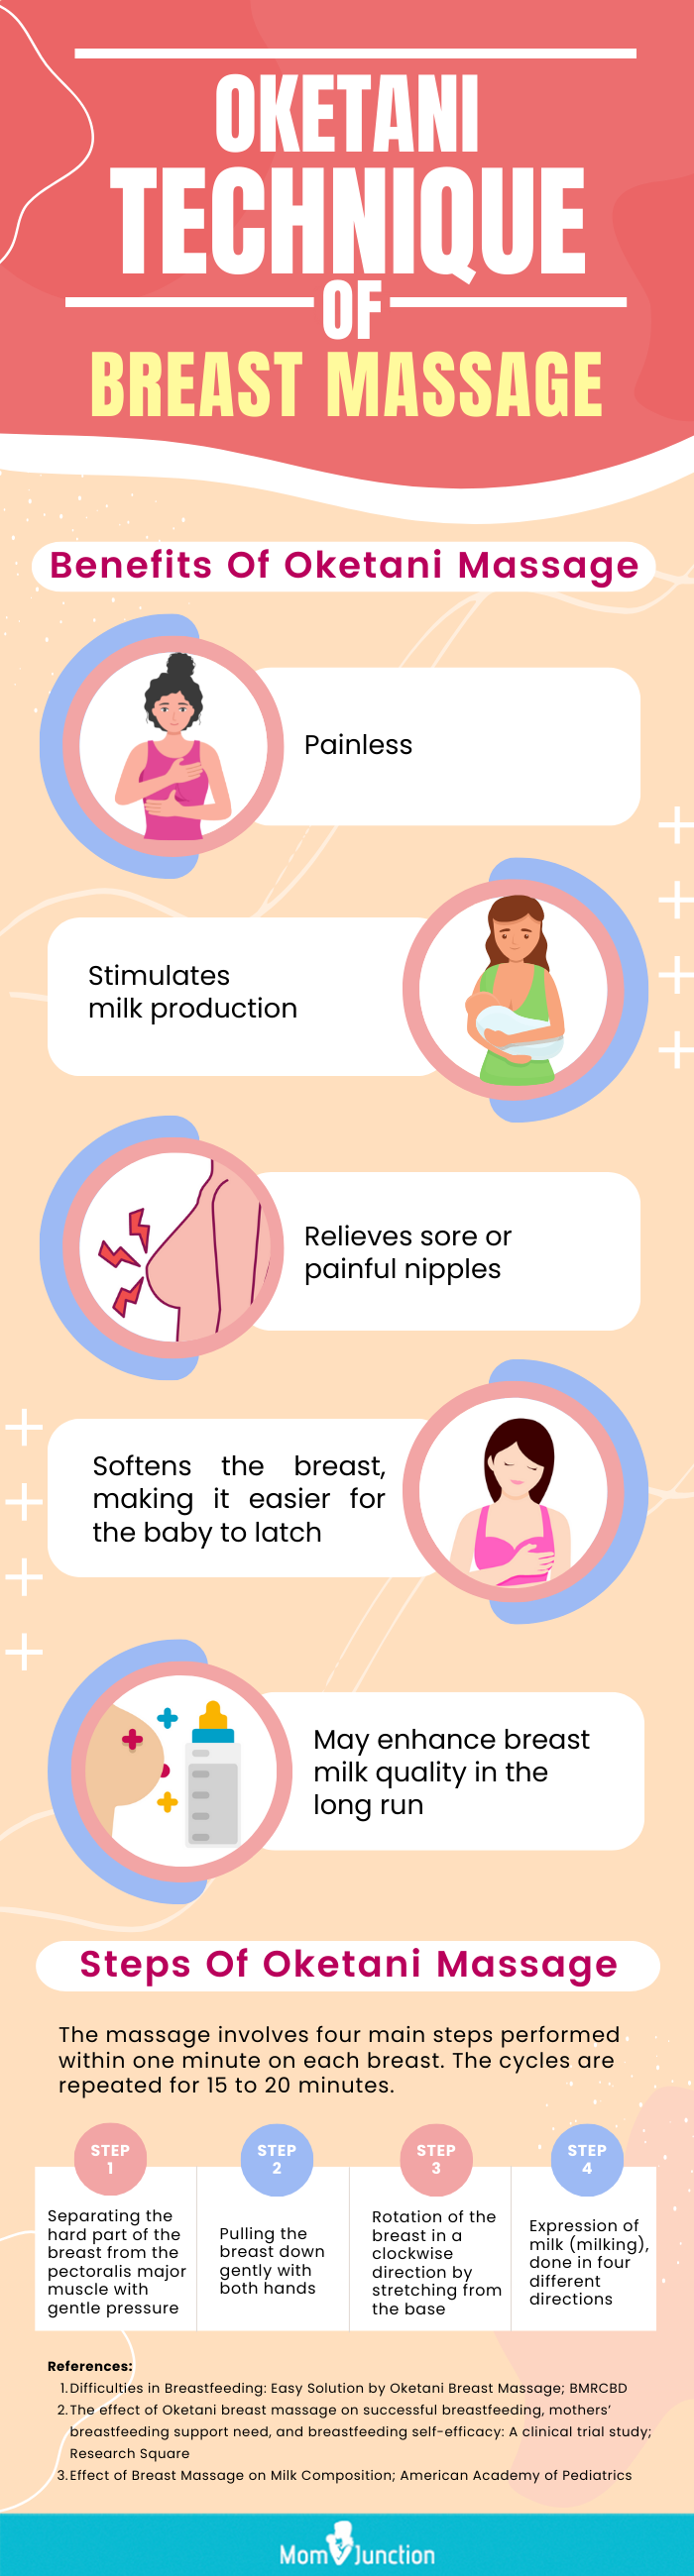 oketani technique of breast massage (infographic)